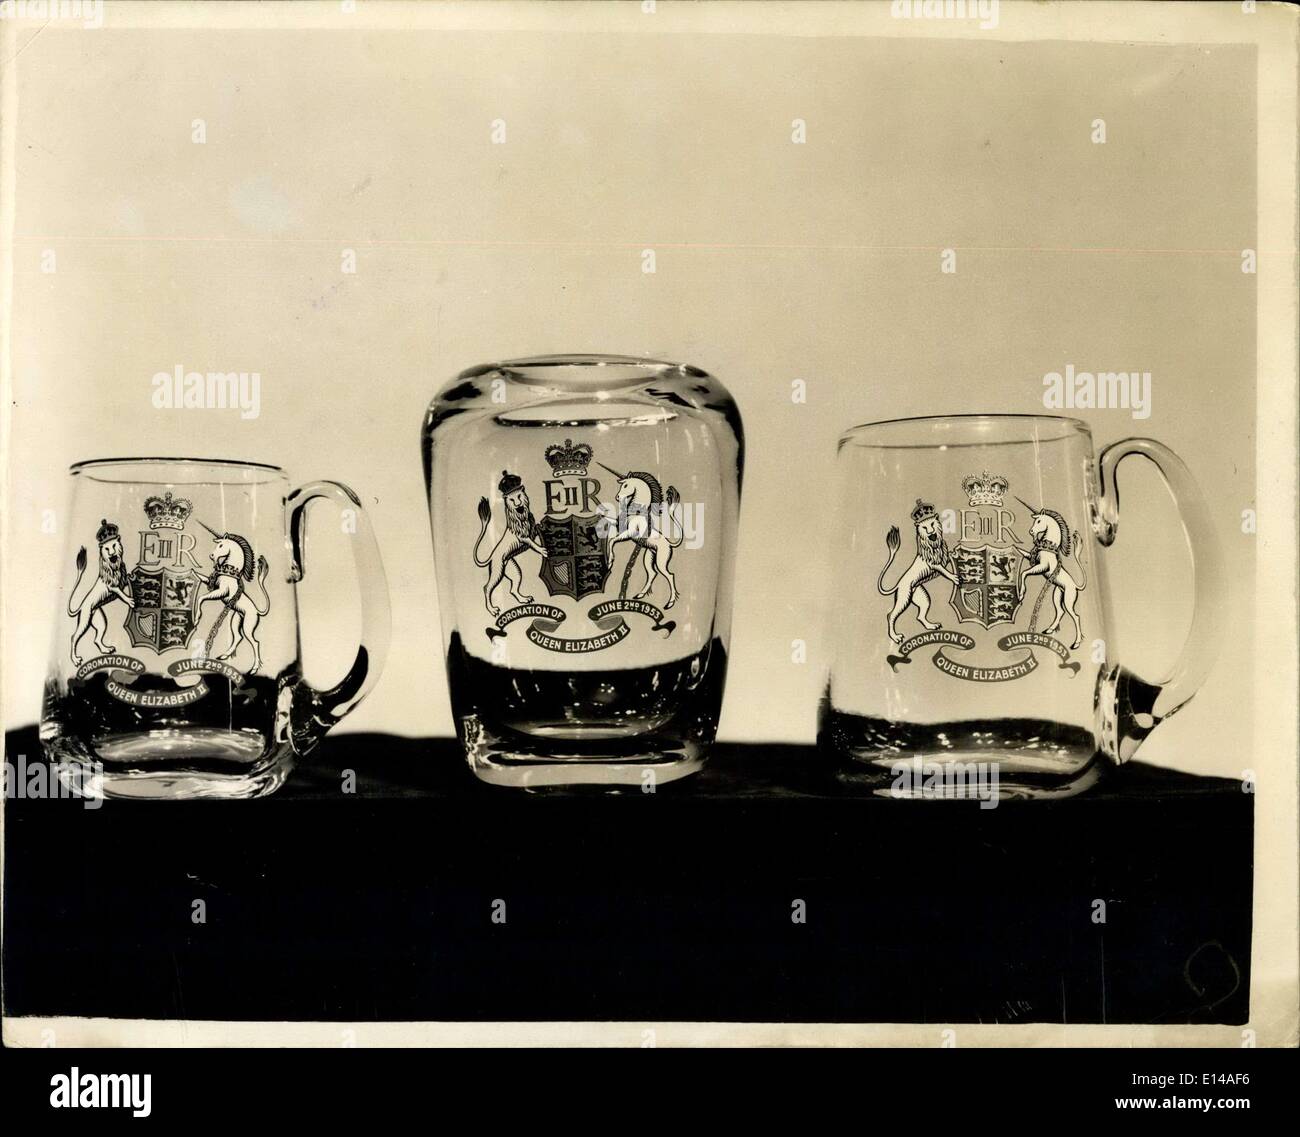 17. April 2012 - Glas Ware anlässlich die Gedenkfeier. Bierkrüge und Humpen:  Humpen oder Bier Tassen, jedes Lager der königlichen Cypher - die Krone und  die Inschrift "Krönung von Königin Elizabeth II